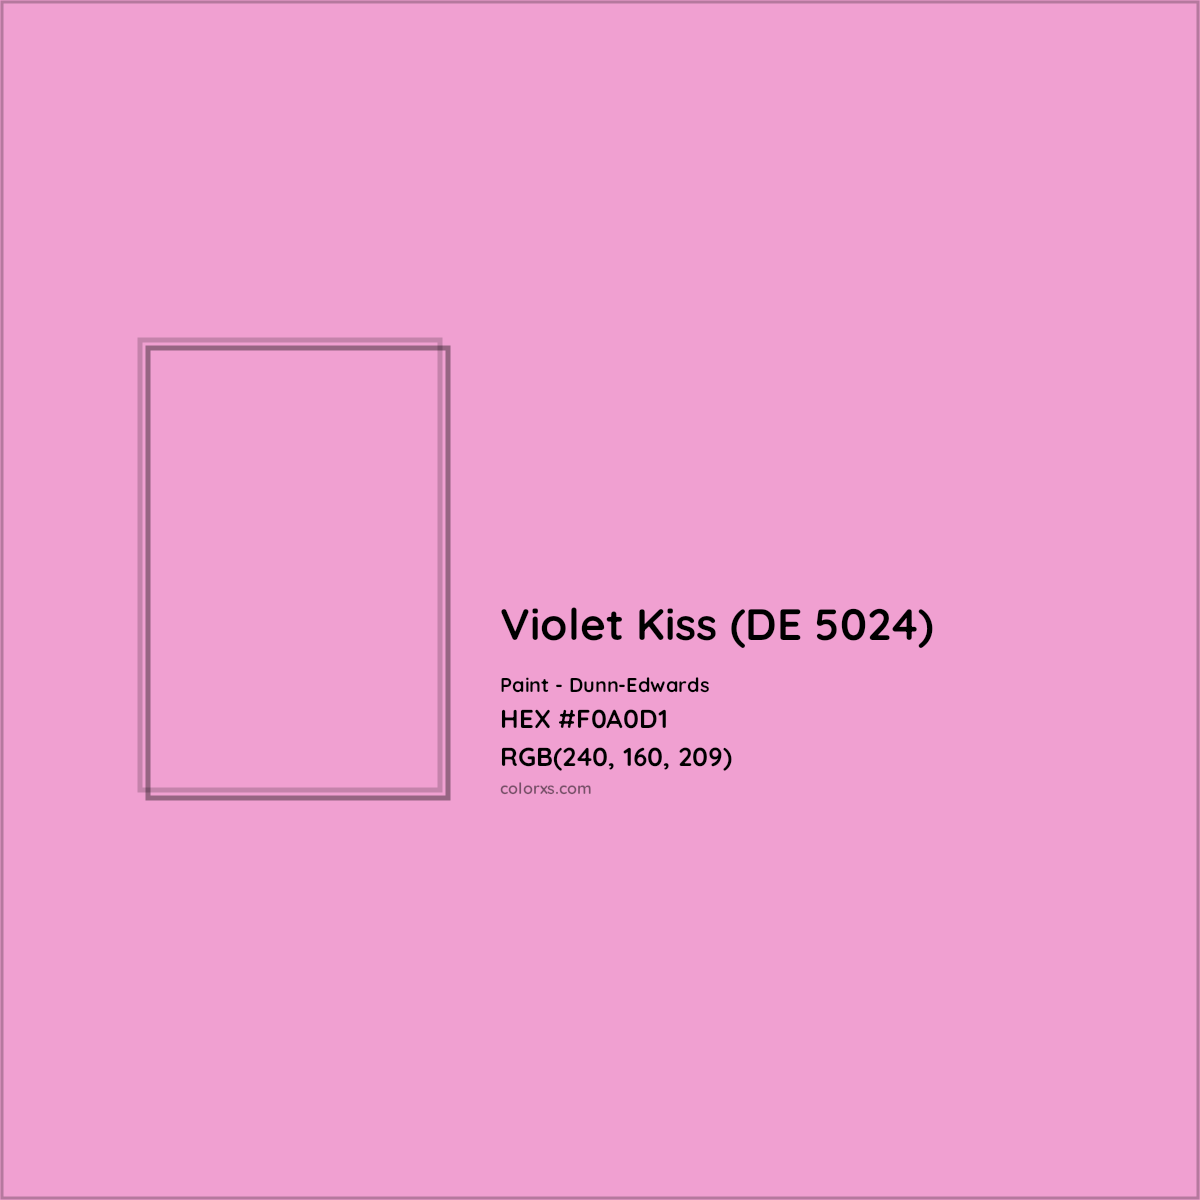 HEX #F0A0D1 Violet Kiss (DE 5024) Paint Dunn-Edwards - Color Code